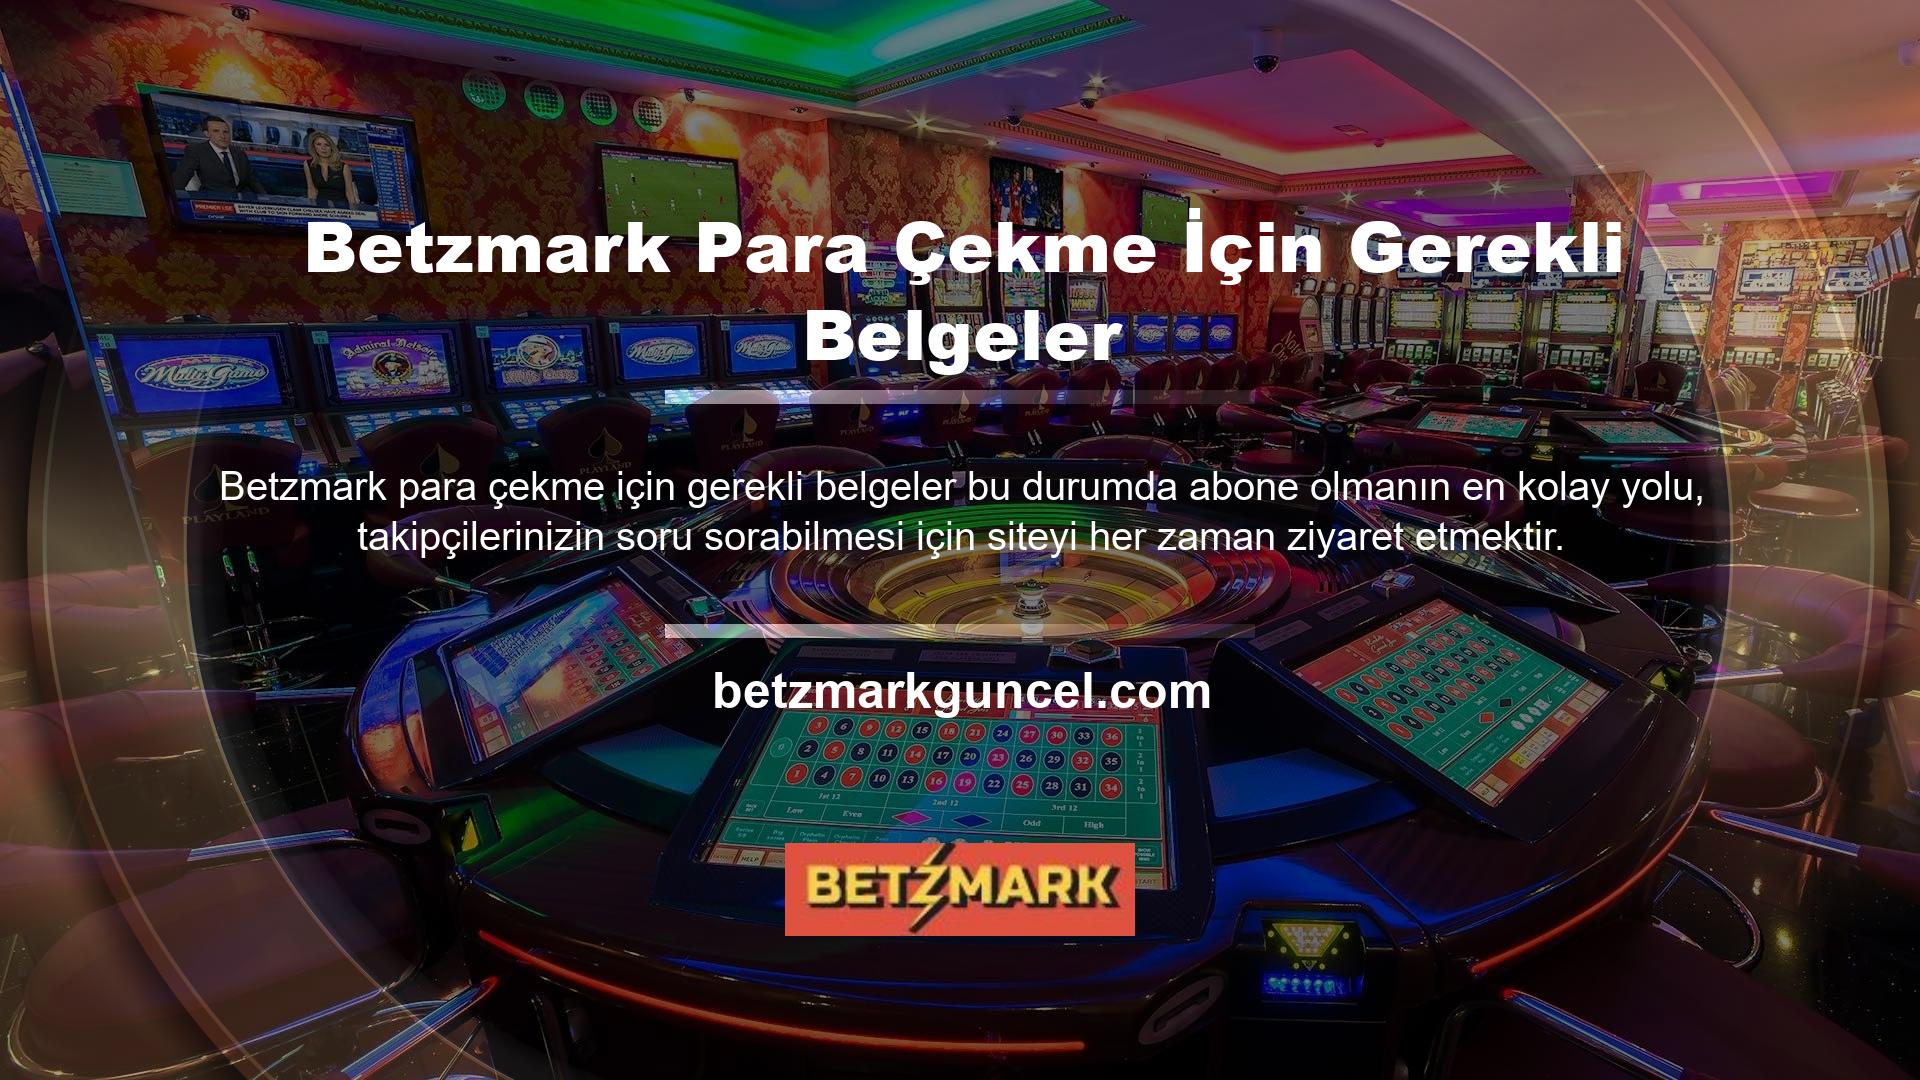 Betzmark Casinodan para çekmek için gerekli belgeleri sağlayamıyorsanız veya Betzmark Casino kapalıysa